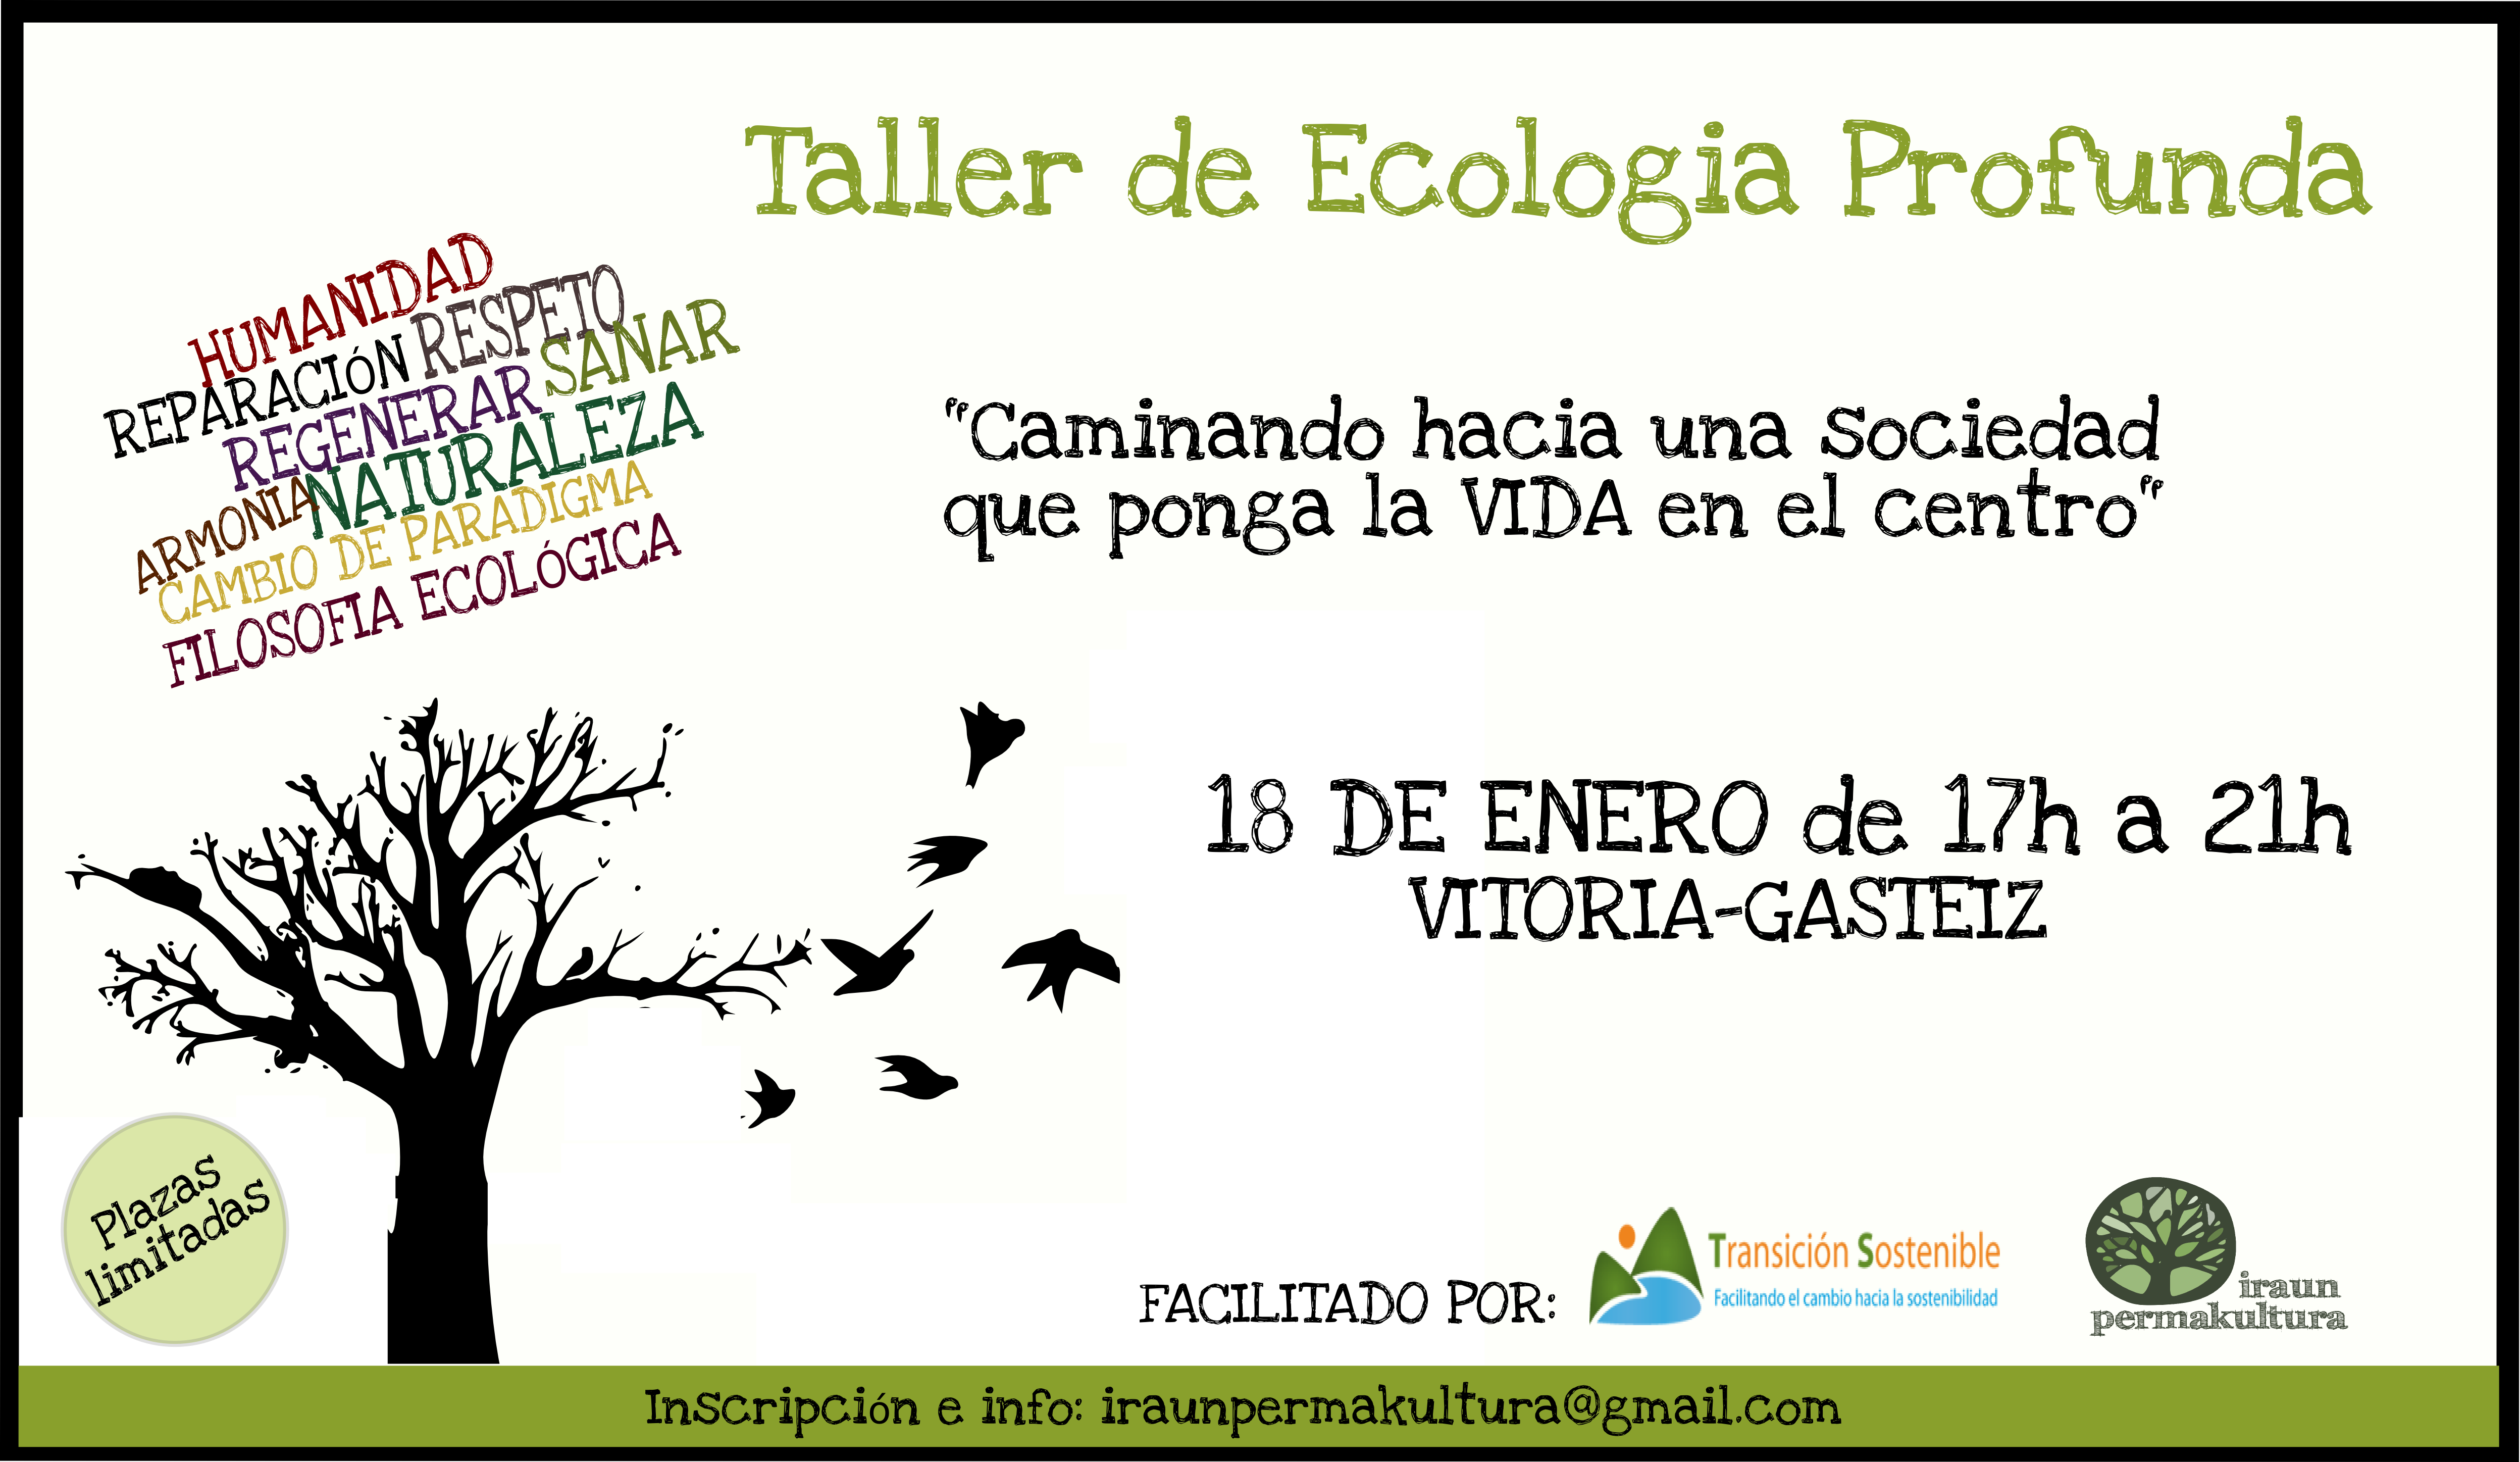 TALLER ECOLOGIA PROFUNDA ENERO 2013 - Transición Sostenible